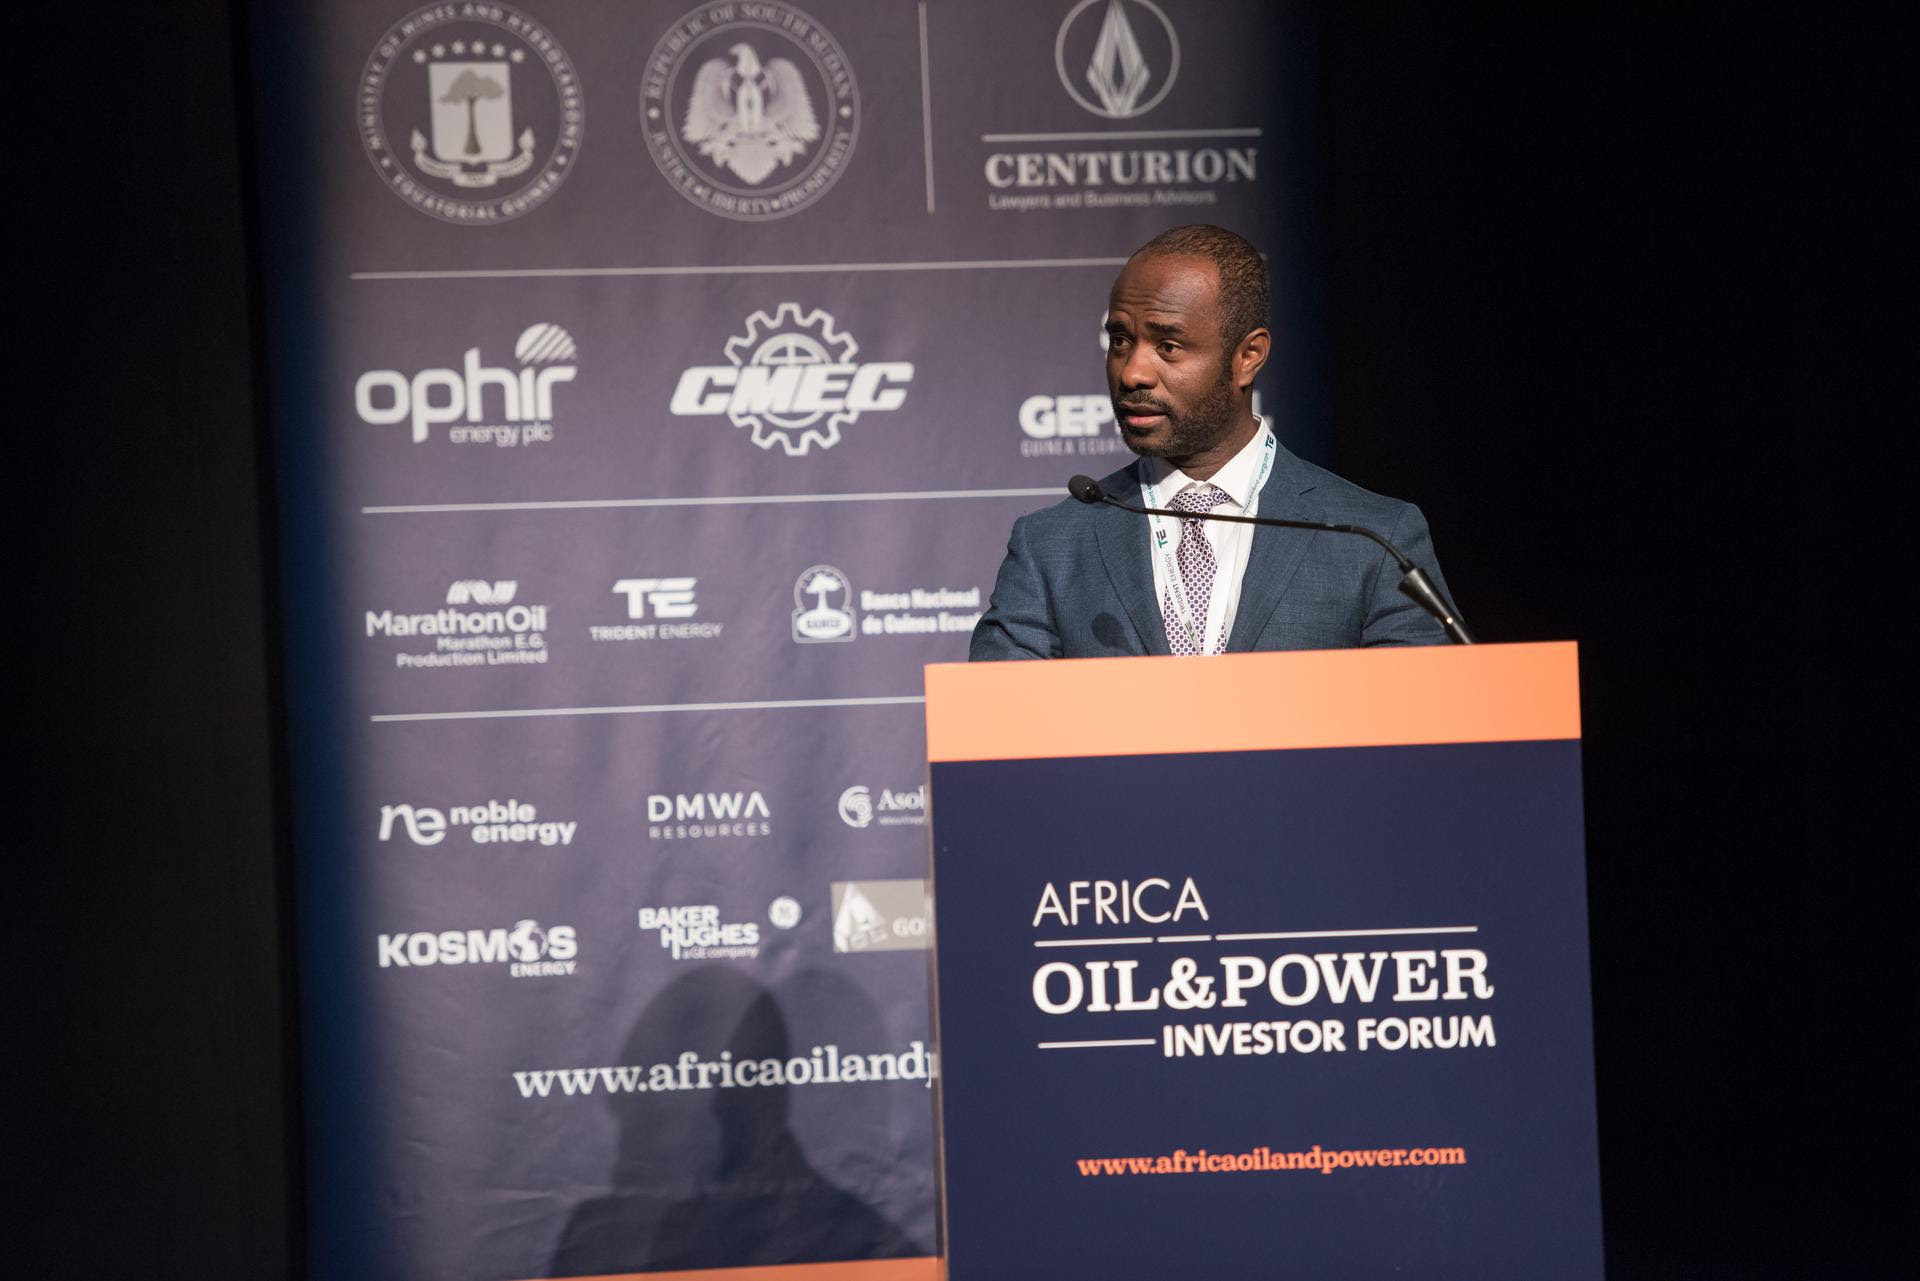 Antonio Oburu Ondo, ancien directeur général de la compagnie pétrolière nationale GEPetrol, a été nommé ministre des Mines et des Hydrocarbures.